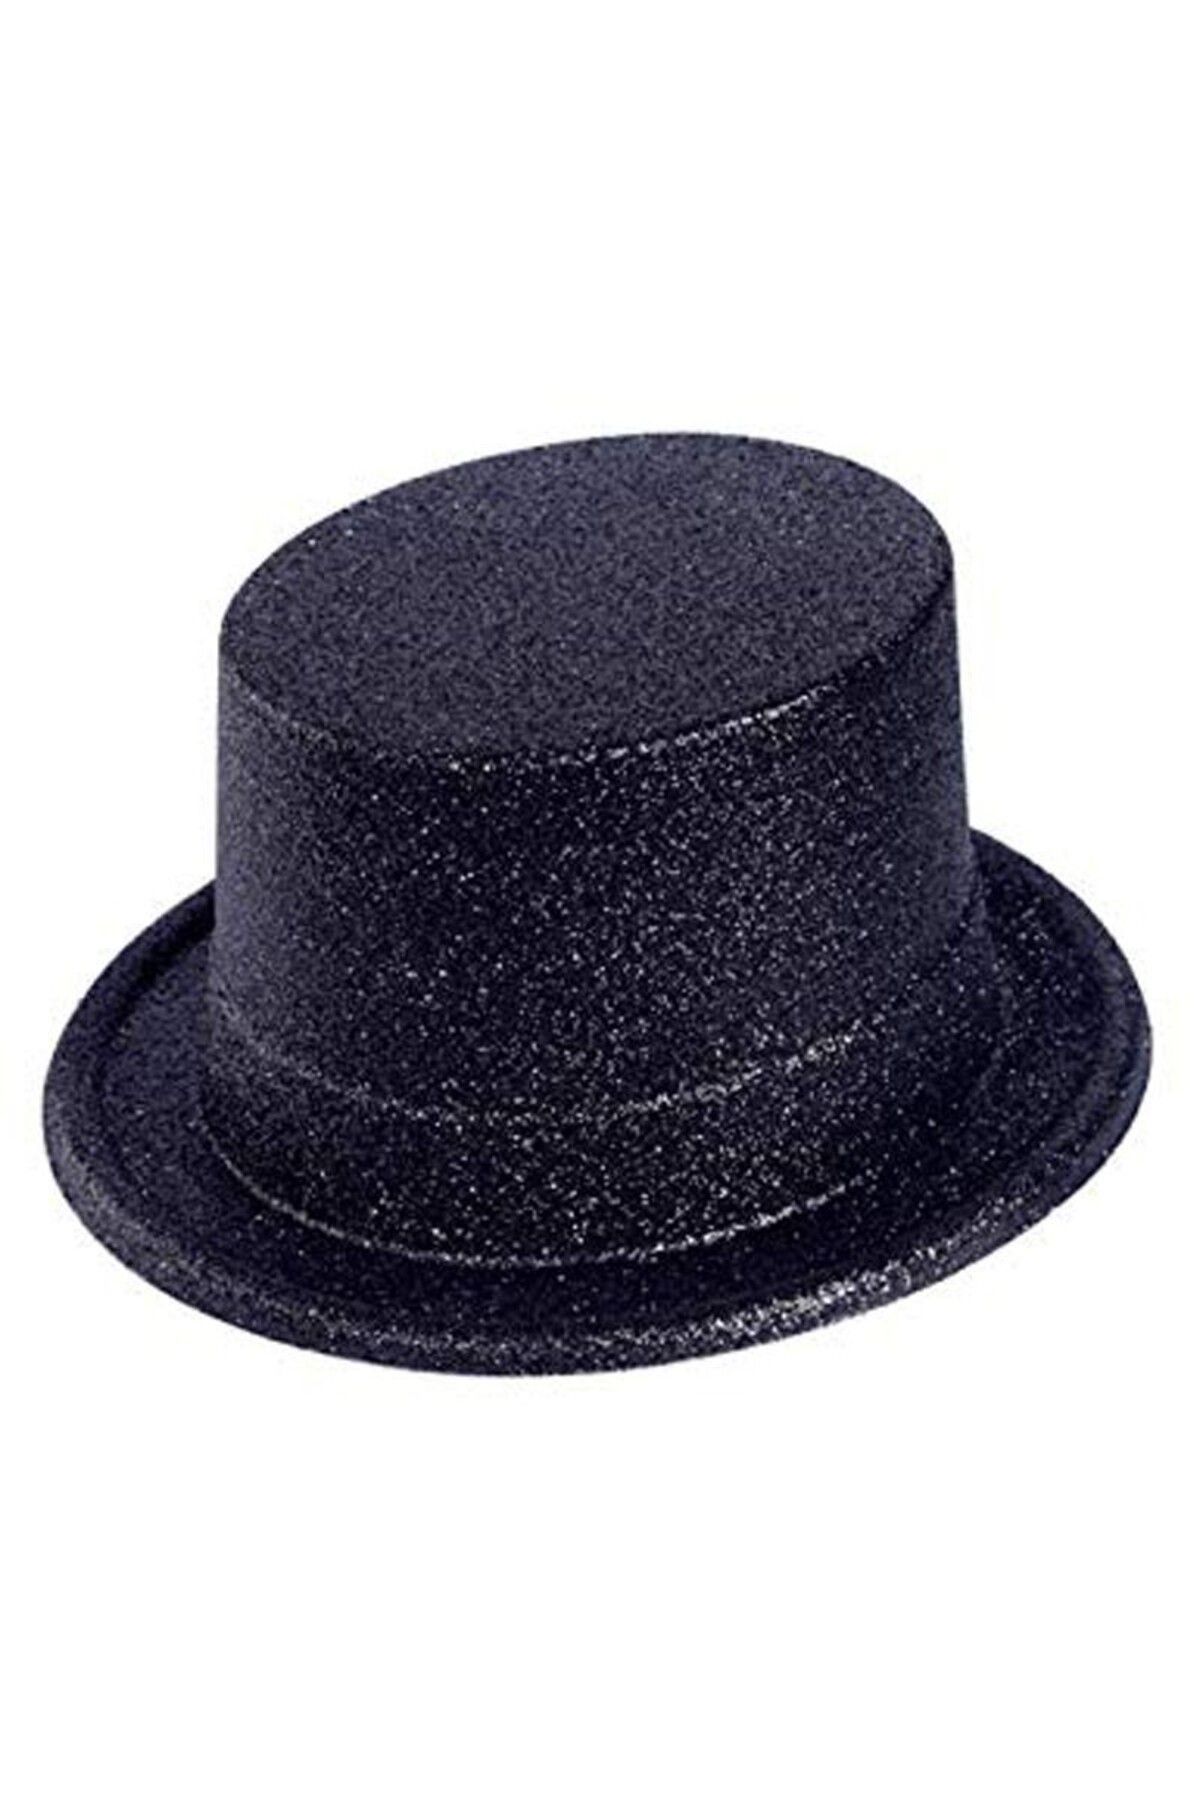 HİMARRY Himarry Siyah Renk Uzun Plastik Simli Parti Şapkası